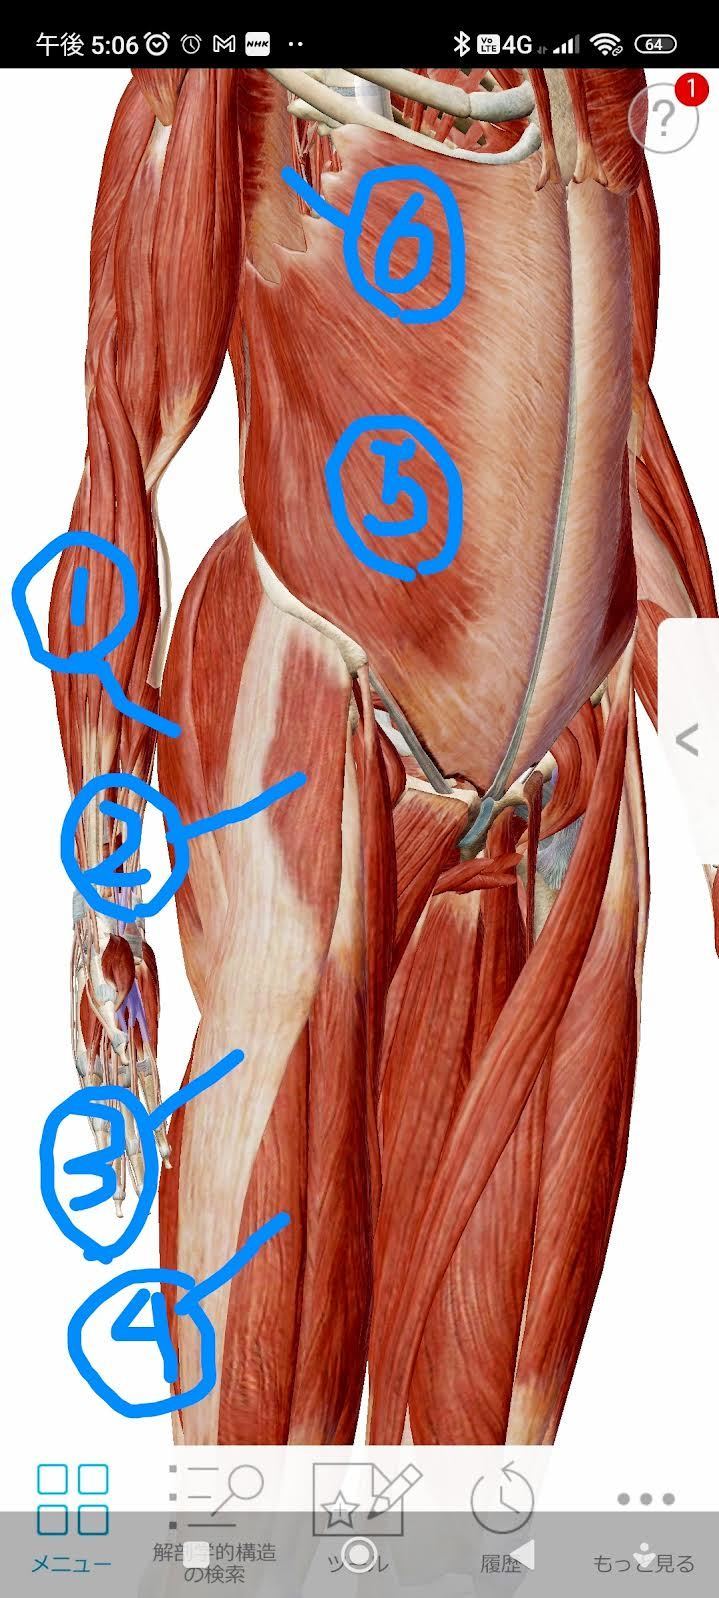 股関節まわりの筋肉の解剖図